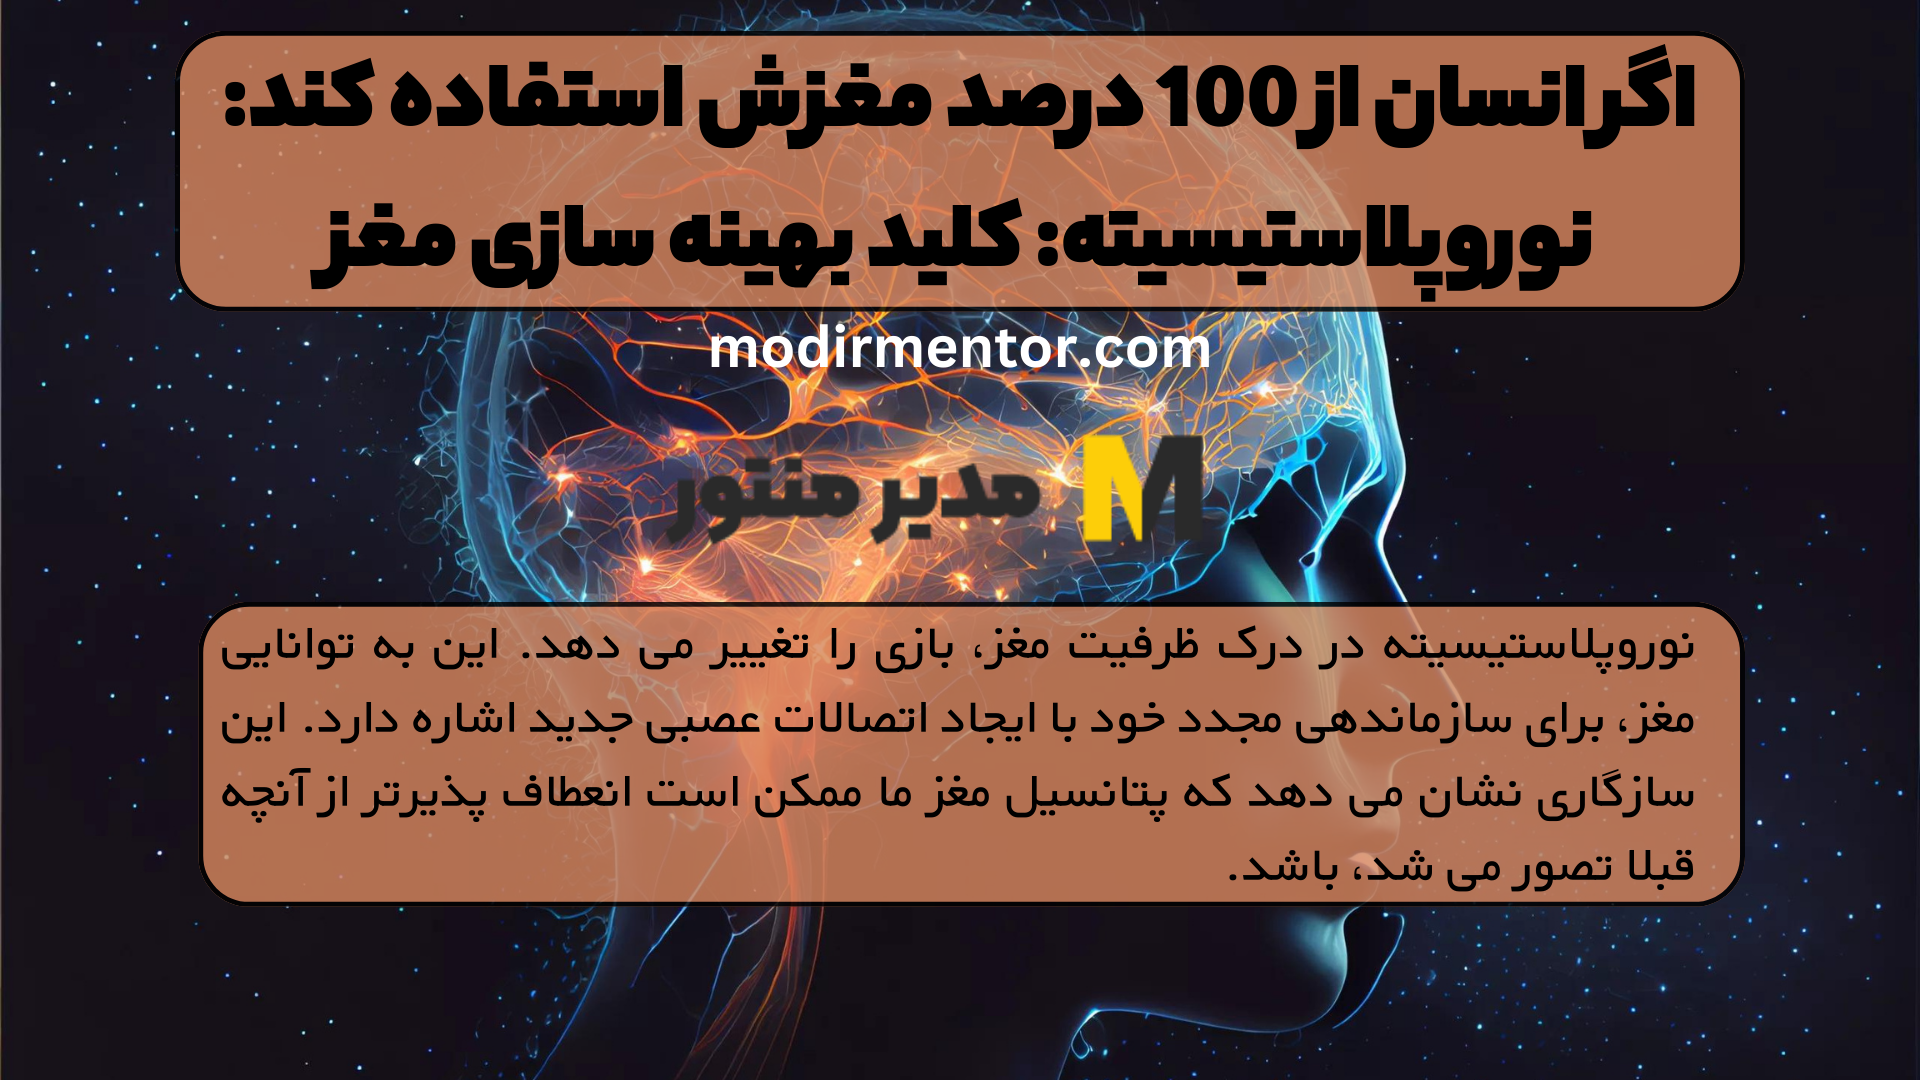 اگر انسان از 100 درصد مغزش استفاده کند: نوروپلاستیسیته: کلید بهینه سازی مغز